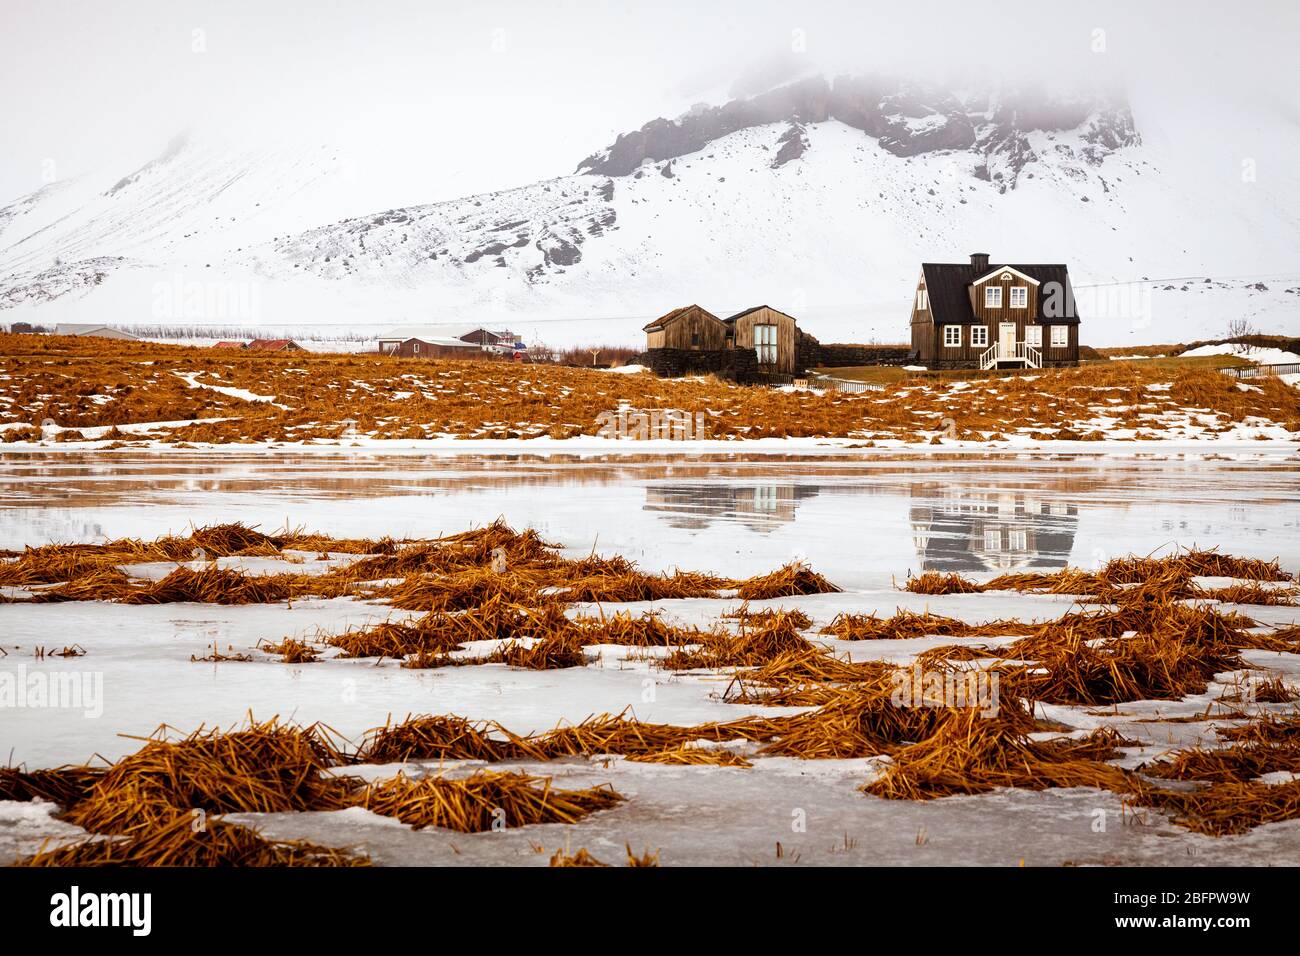 Casa Amtmannshusid ad Arnarstapi sulla penisola di Snaefellsnes in Islanda in una giornata invernale ghiacciata e nevosa nei toni dell'arancio e del bianco Foto Stock